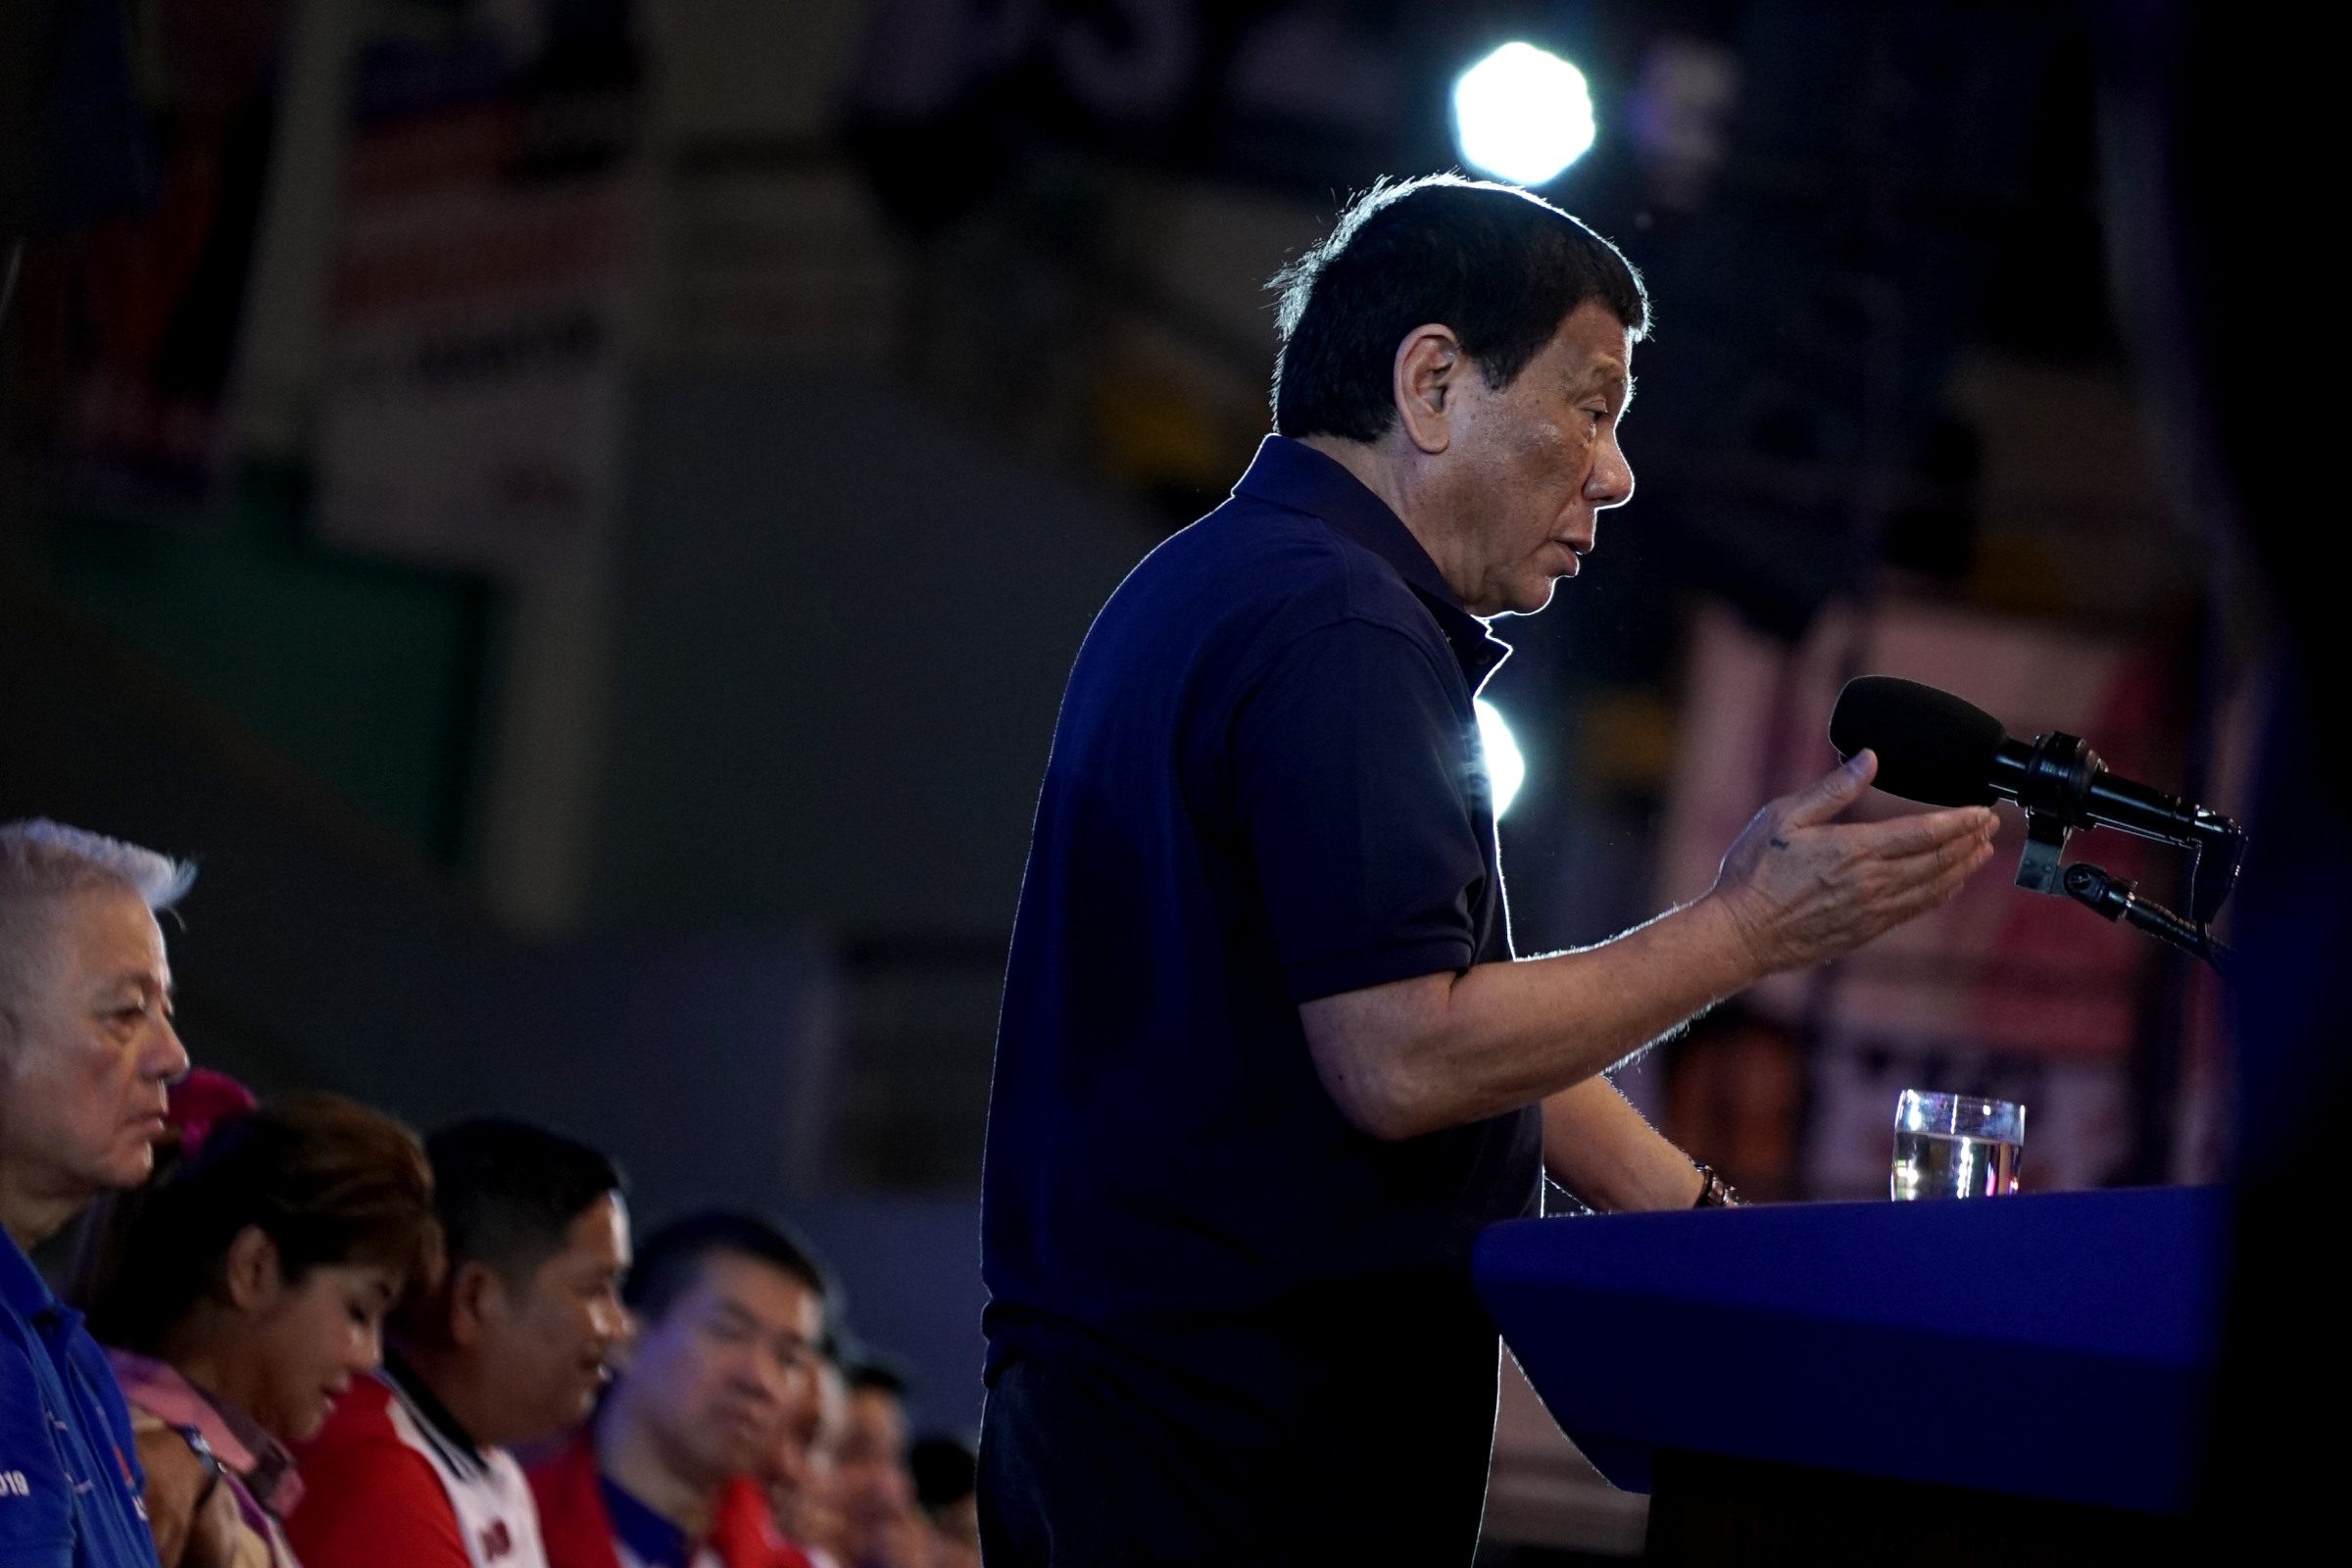 Public satisfaction with Duterte gov’t rises in last quarter of 2018